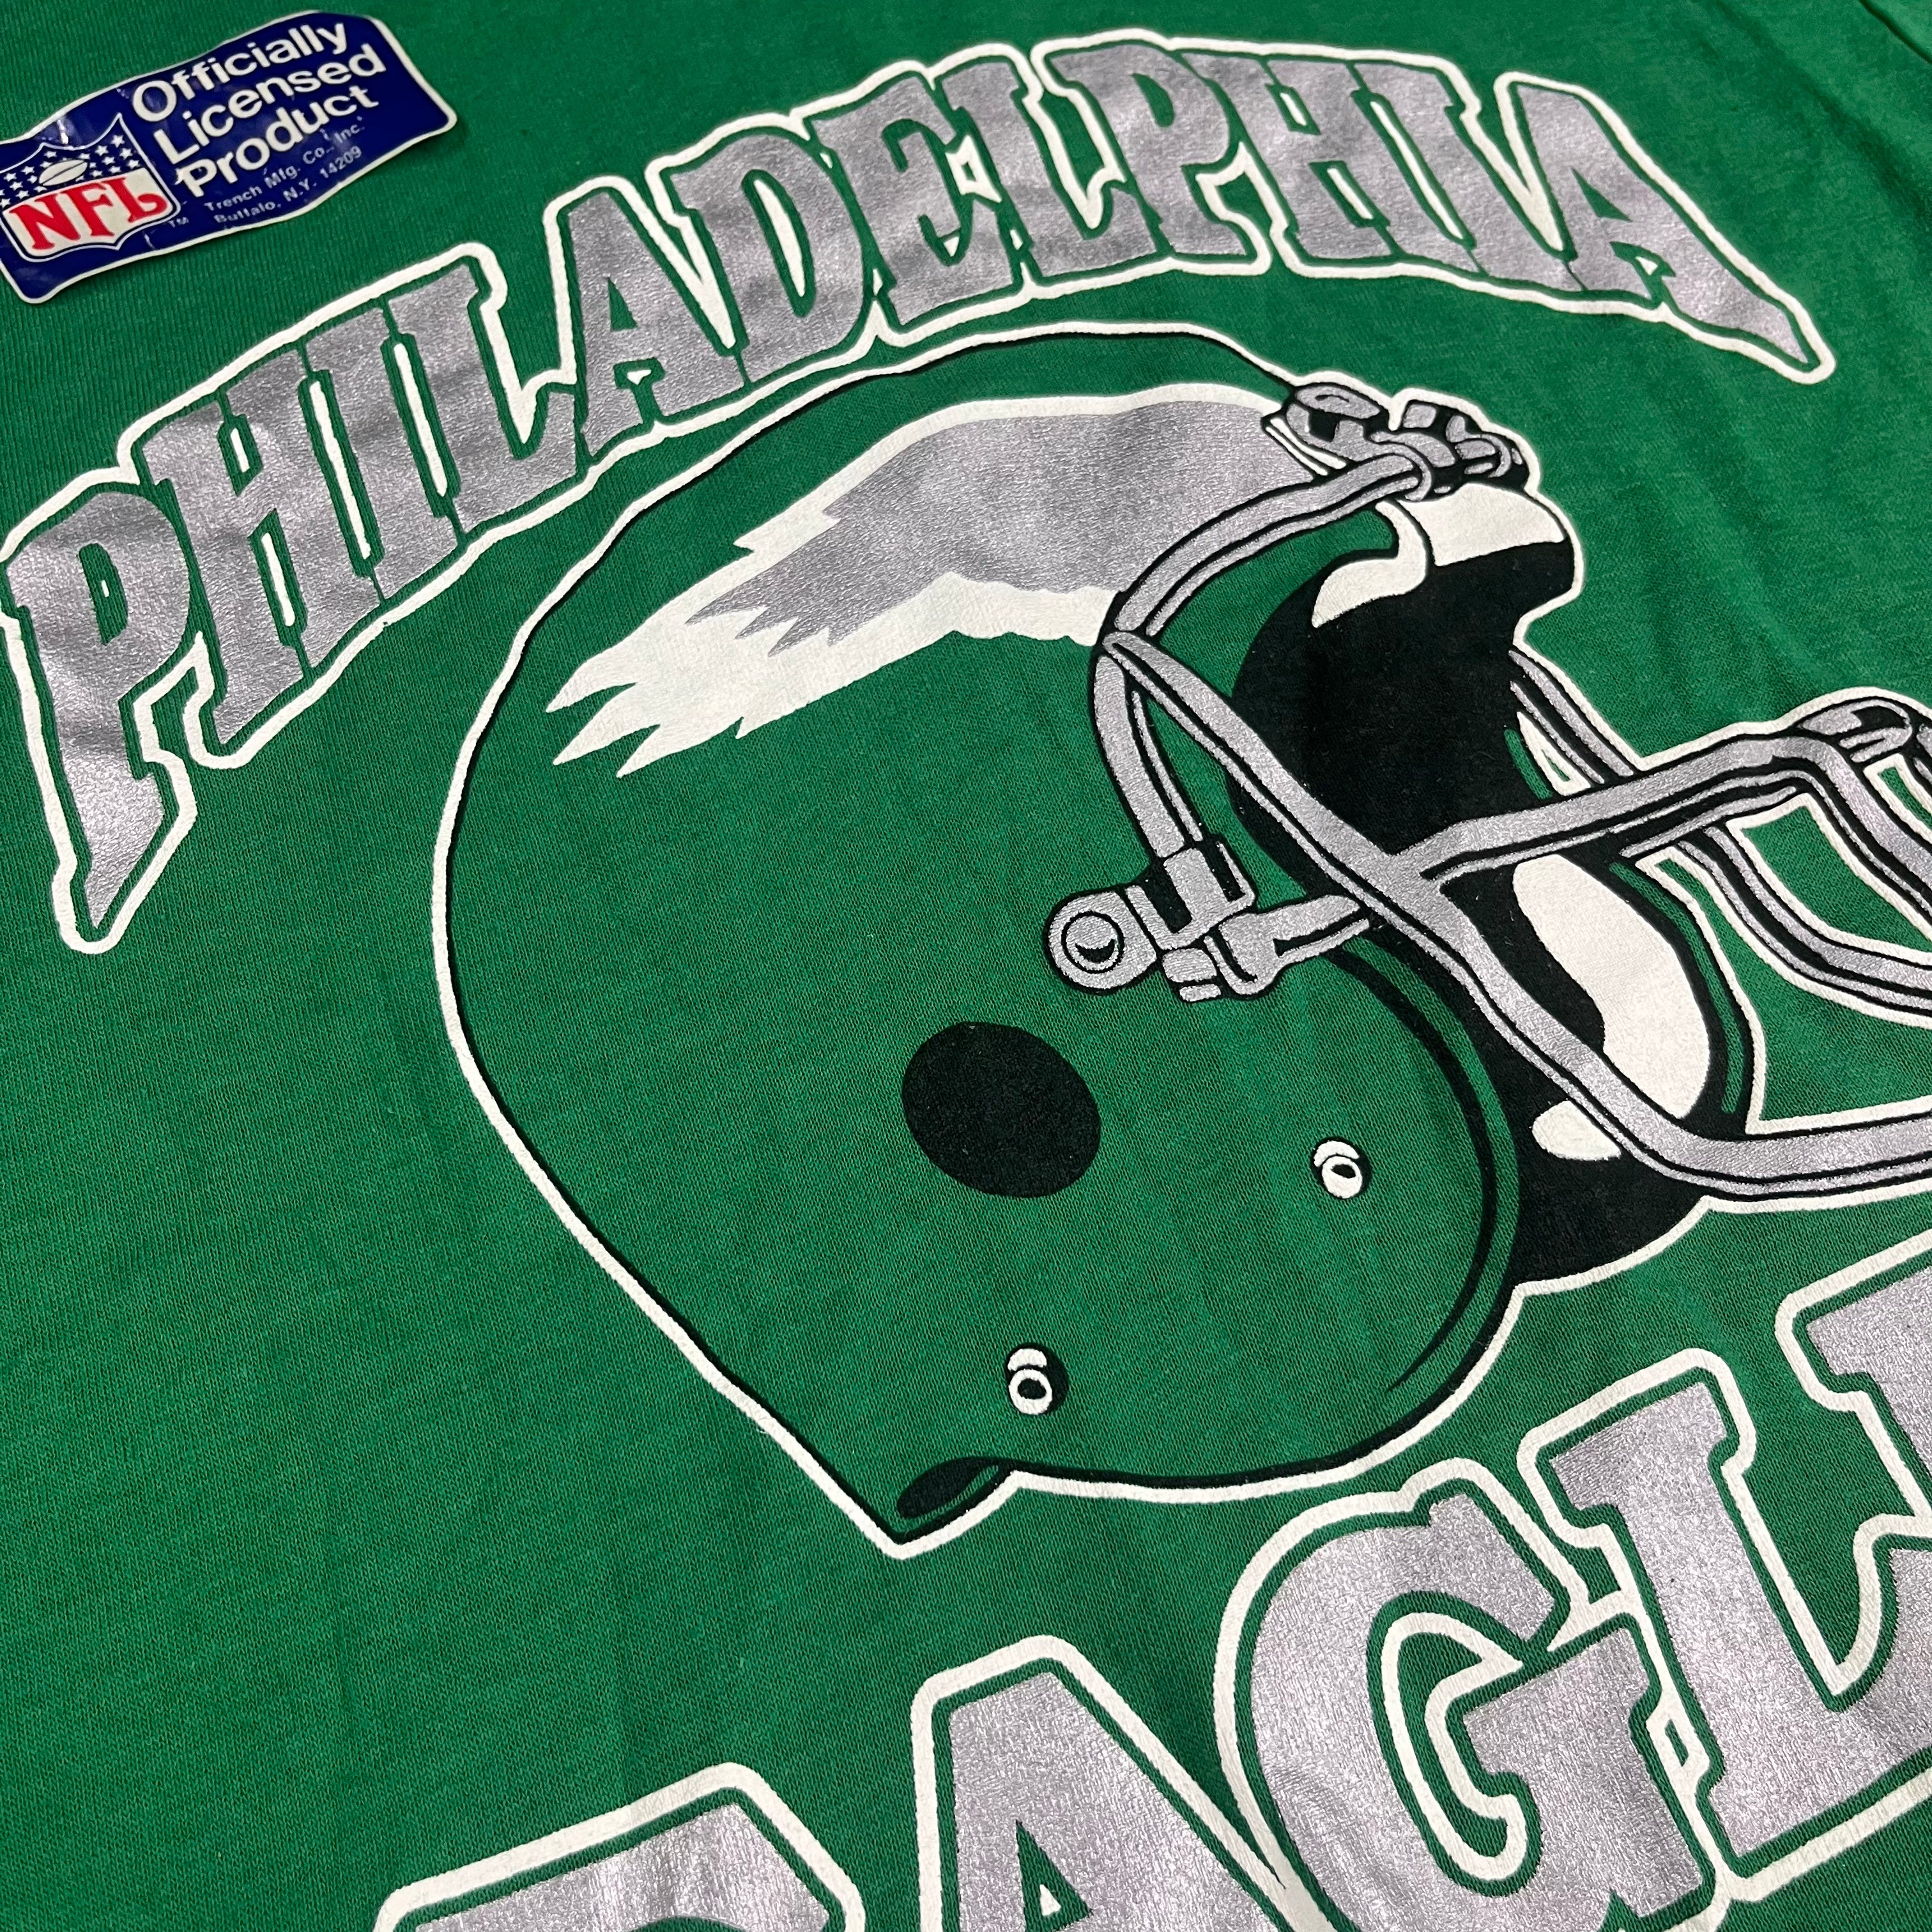 philadelphia eagles baseball shirt